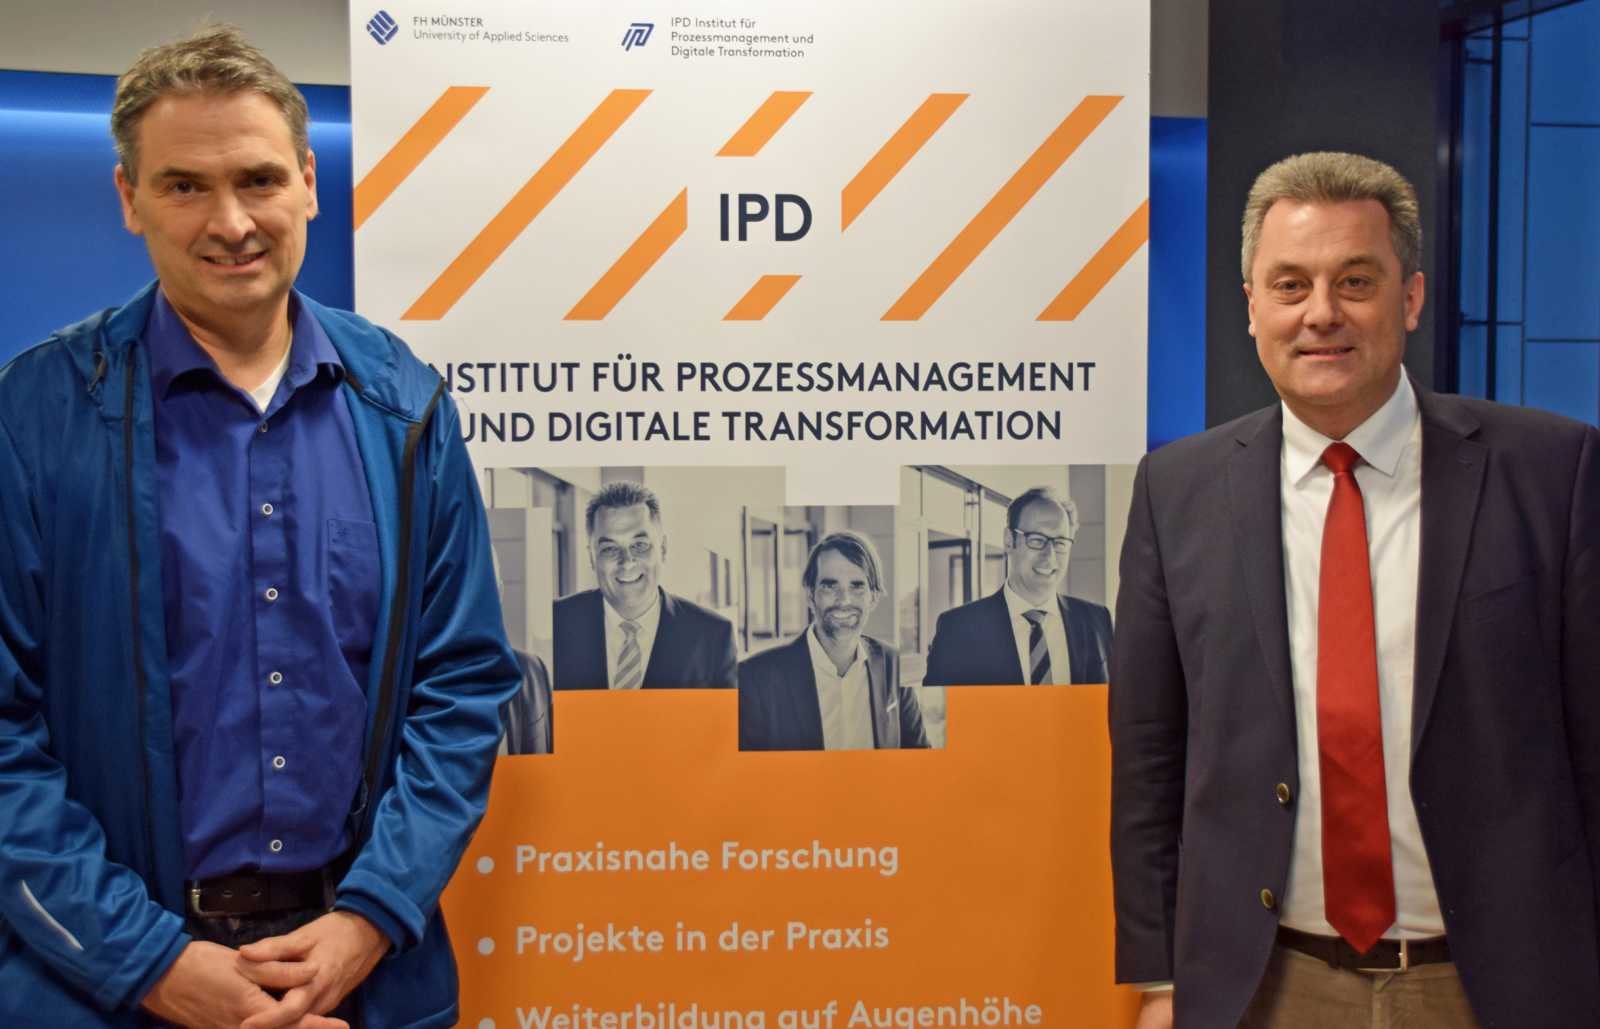 Dr. Ole Wintermann von der Bertelsmann Stiftung (l.) hat auf Einladung von Prof. Dr. Wieland Appelfeller vom IPD einen Vortrag über die Digitalisierung der Arbeit gehalten. (Foto: FH Münster/MSB) 